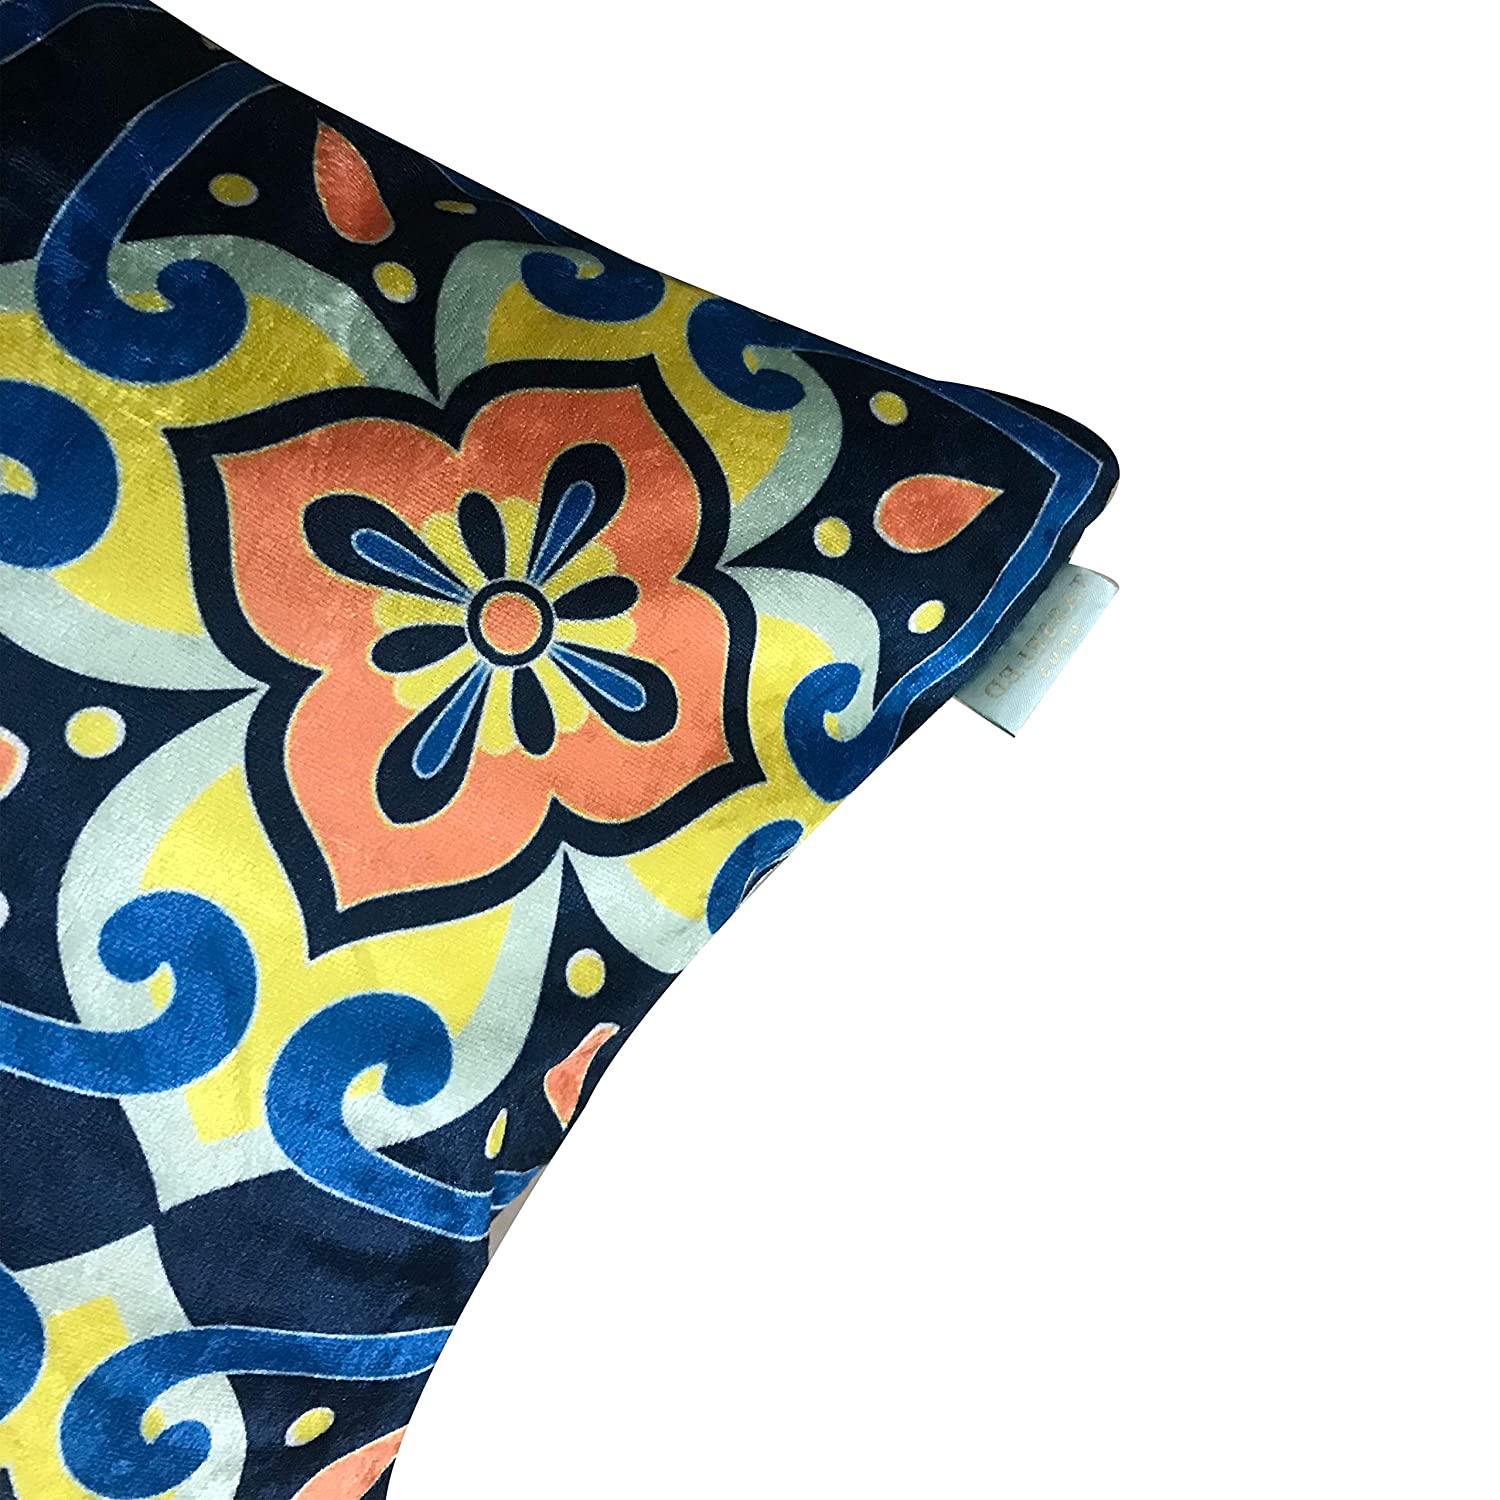 Meknes Blue Moroccan Chic Designer Velvet Cushion Cover